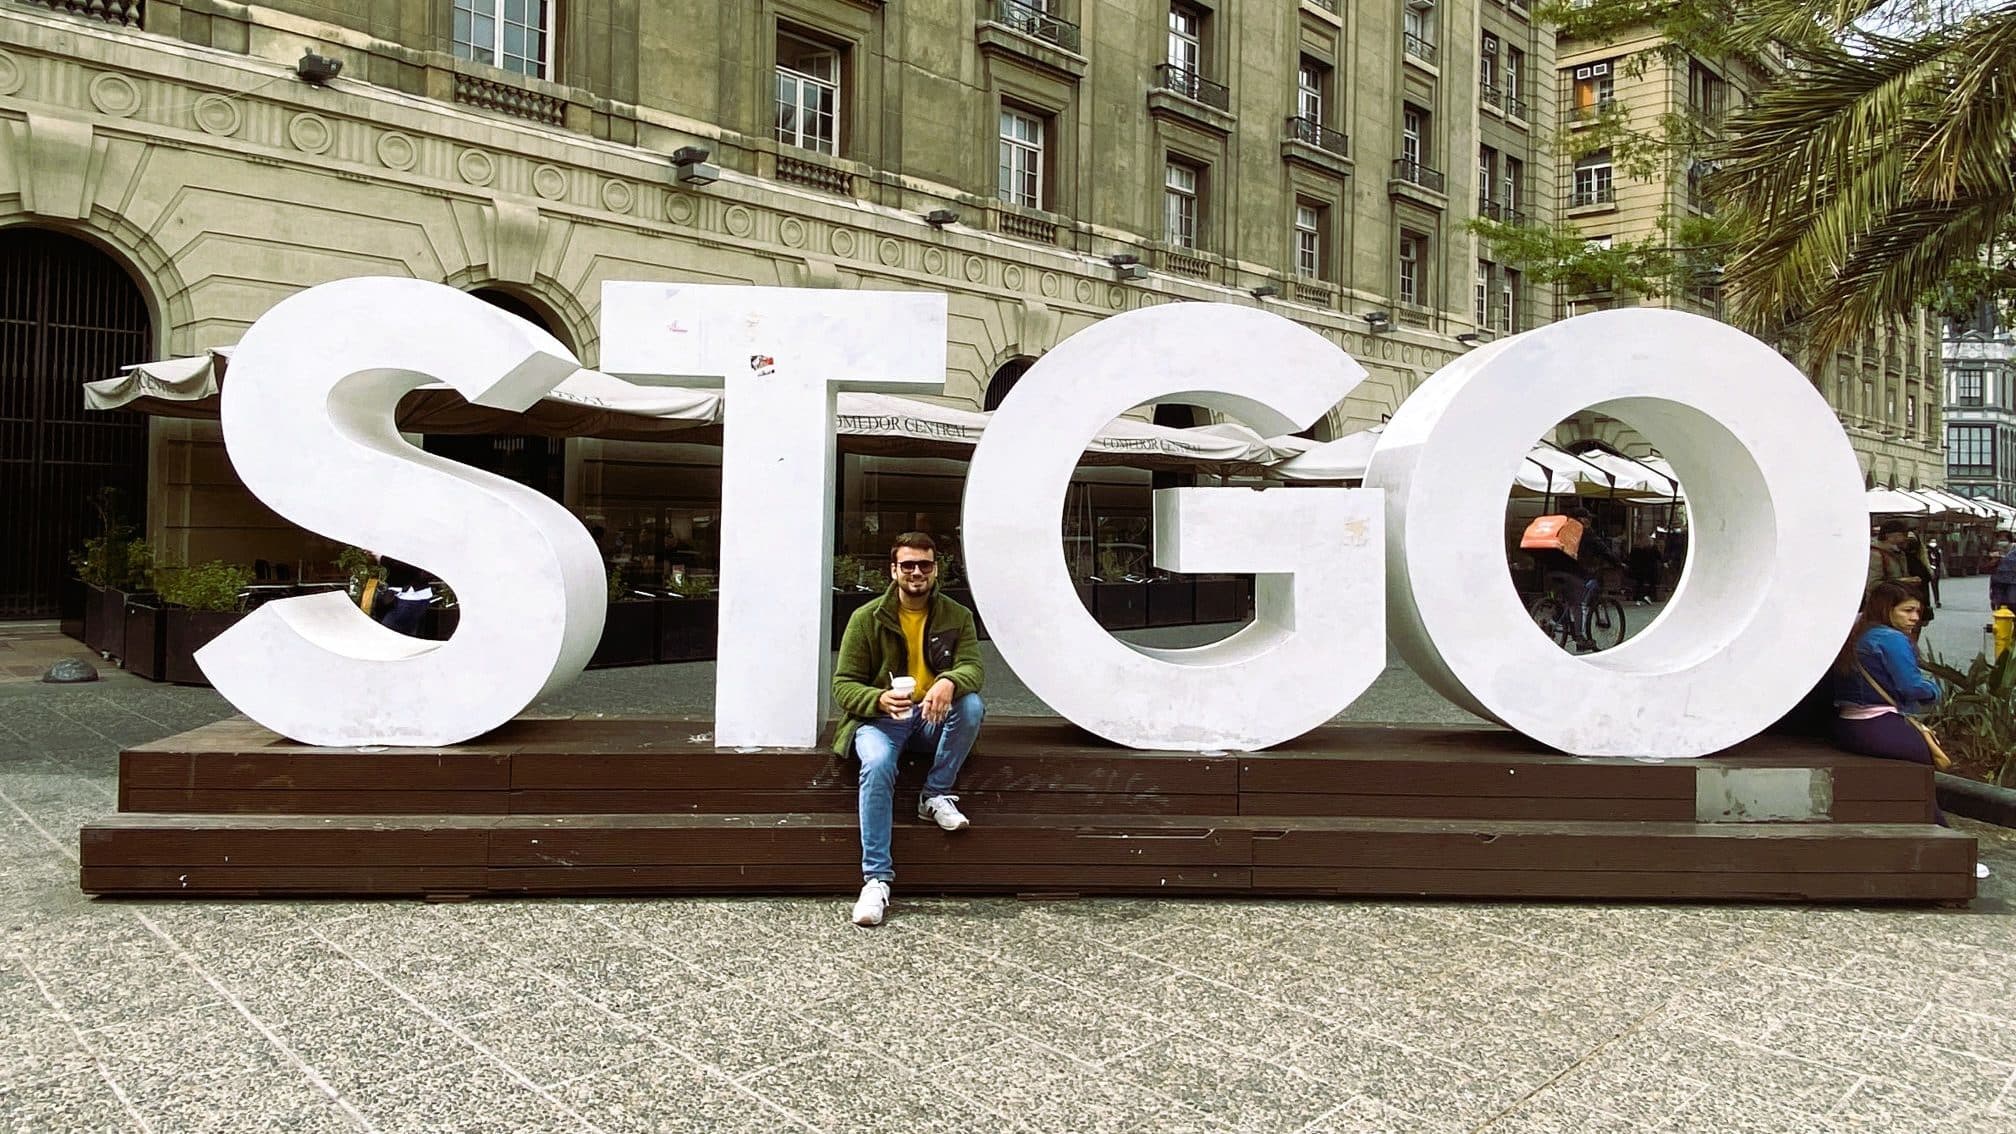 STGO - Abkürzung von Santiago